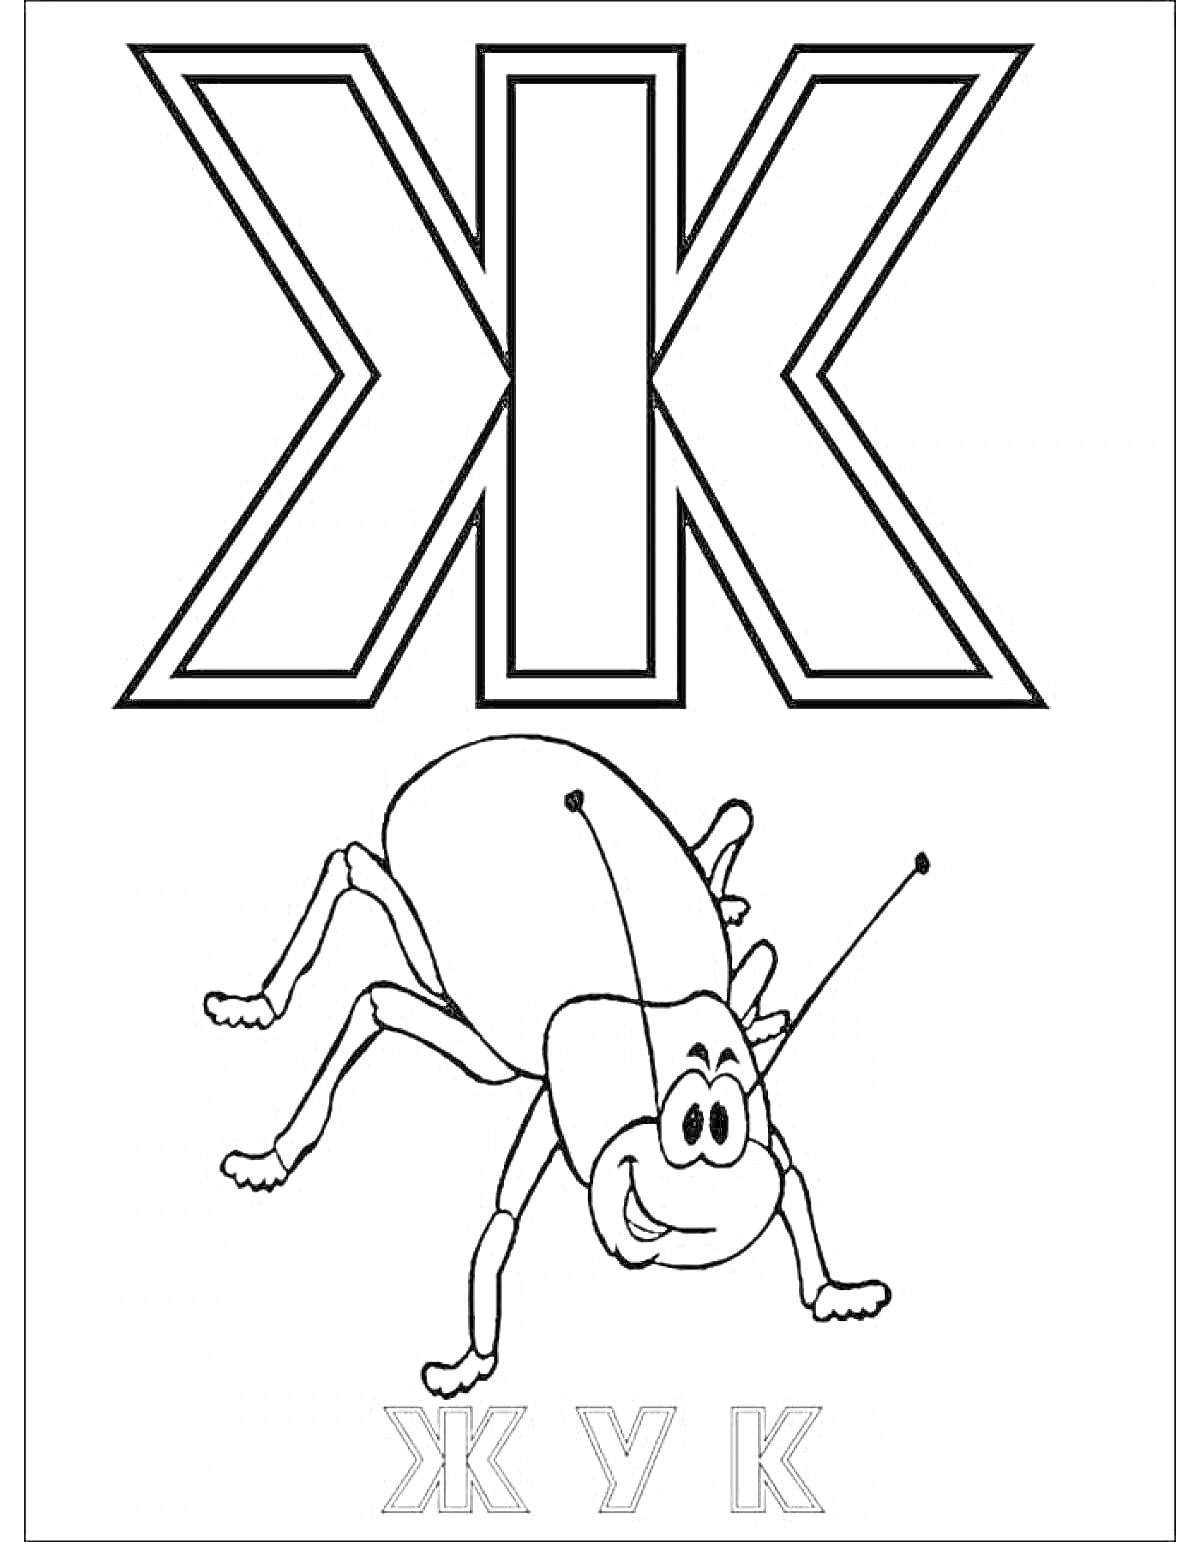 Раскраска Буква Ж с жуком и подписями